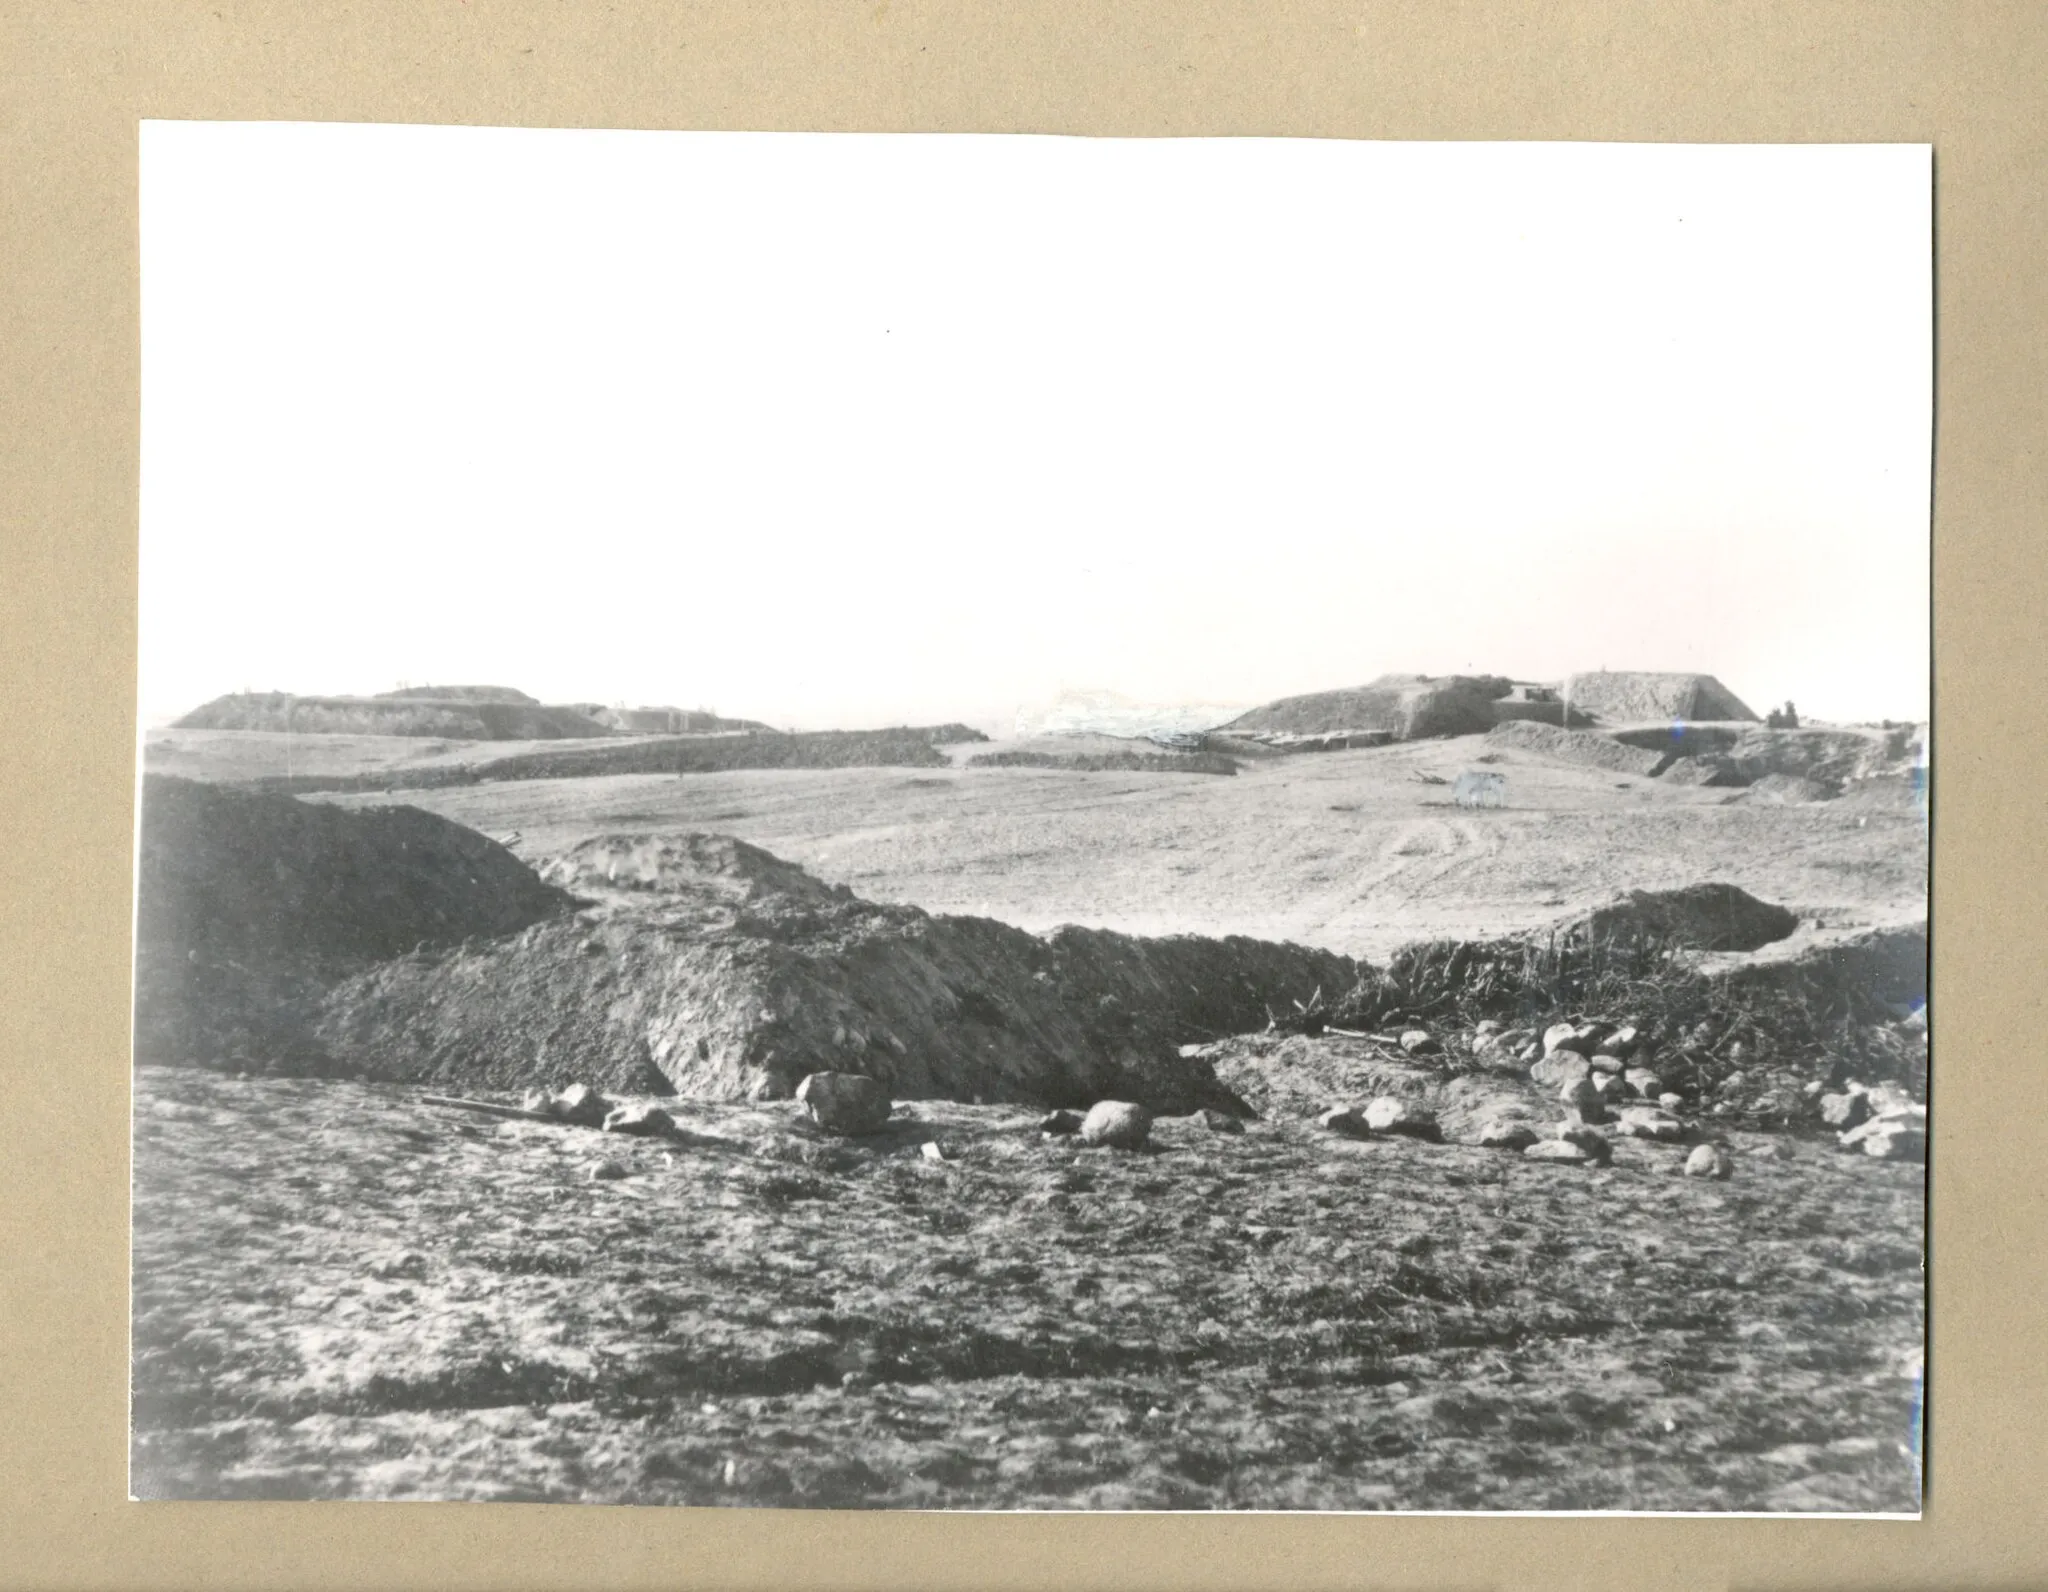 Photo showing: I forgrunden del af den tilbagetrukne linje, lige efter stormen. 1864.